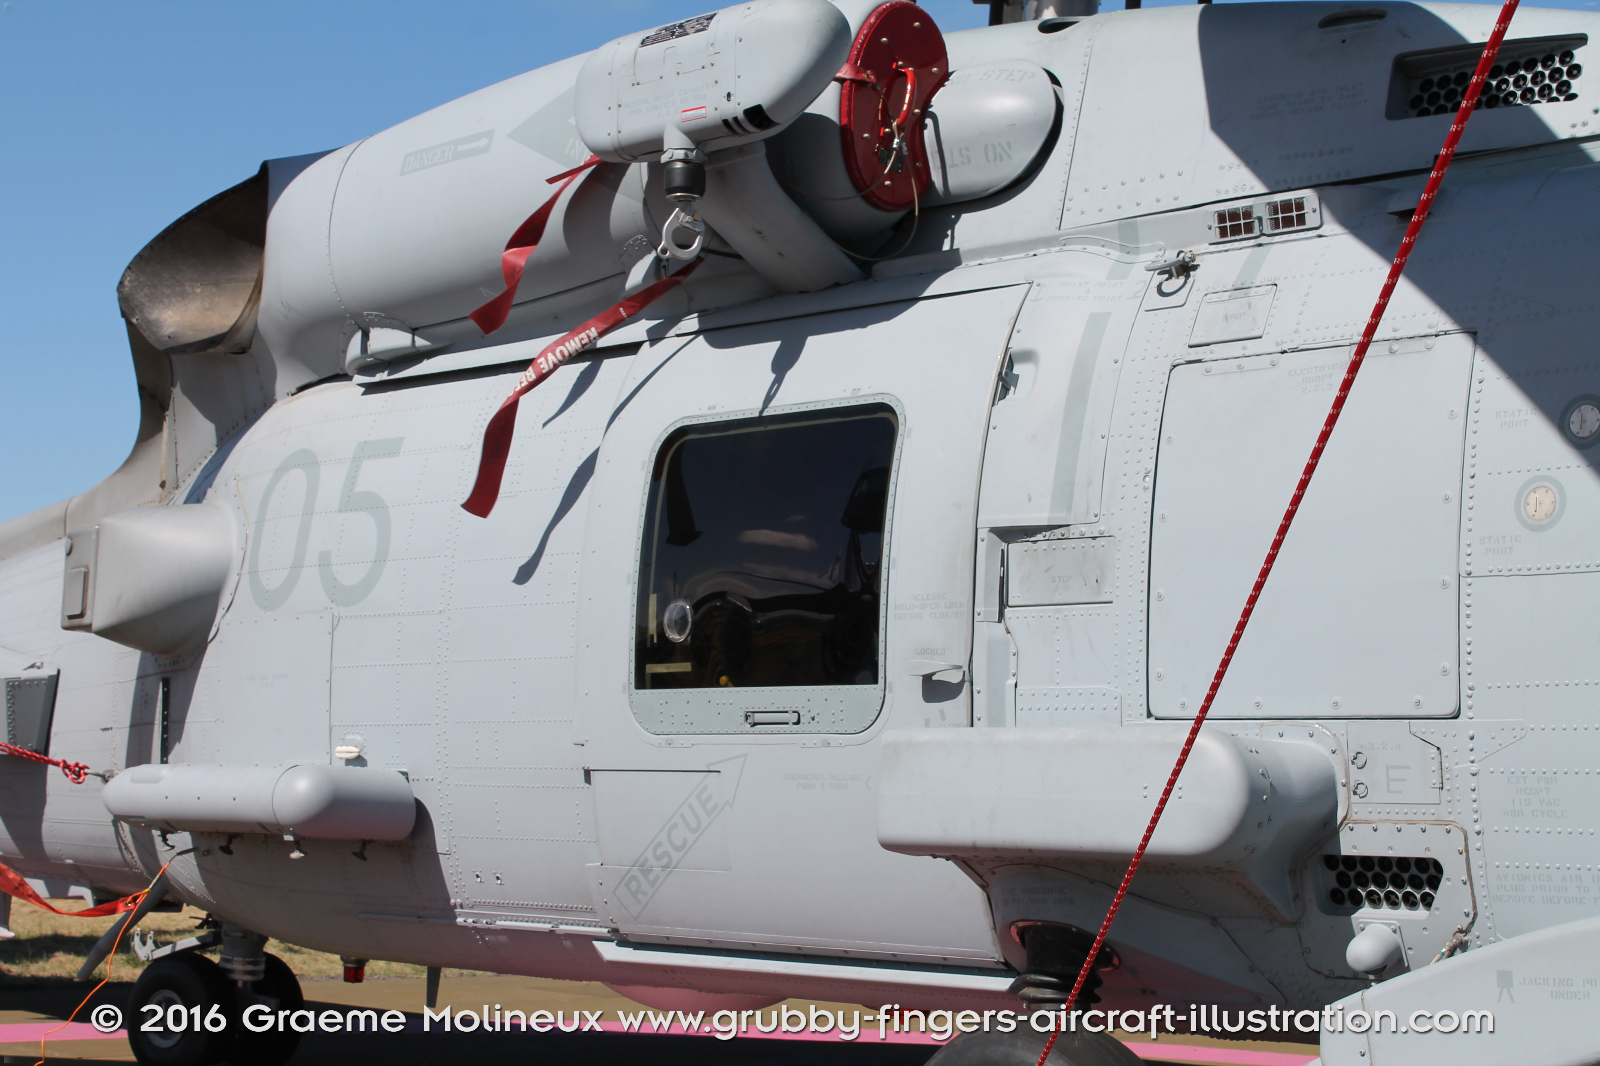 SIKORSKY_MH-60R_Seahawk_N48-005_Avalon_2015_29_GrubbyFingers